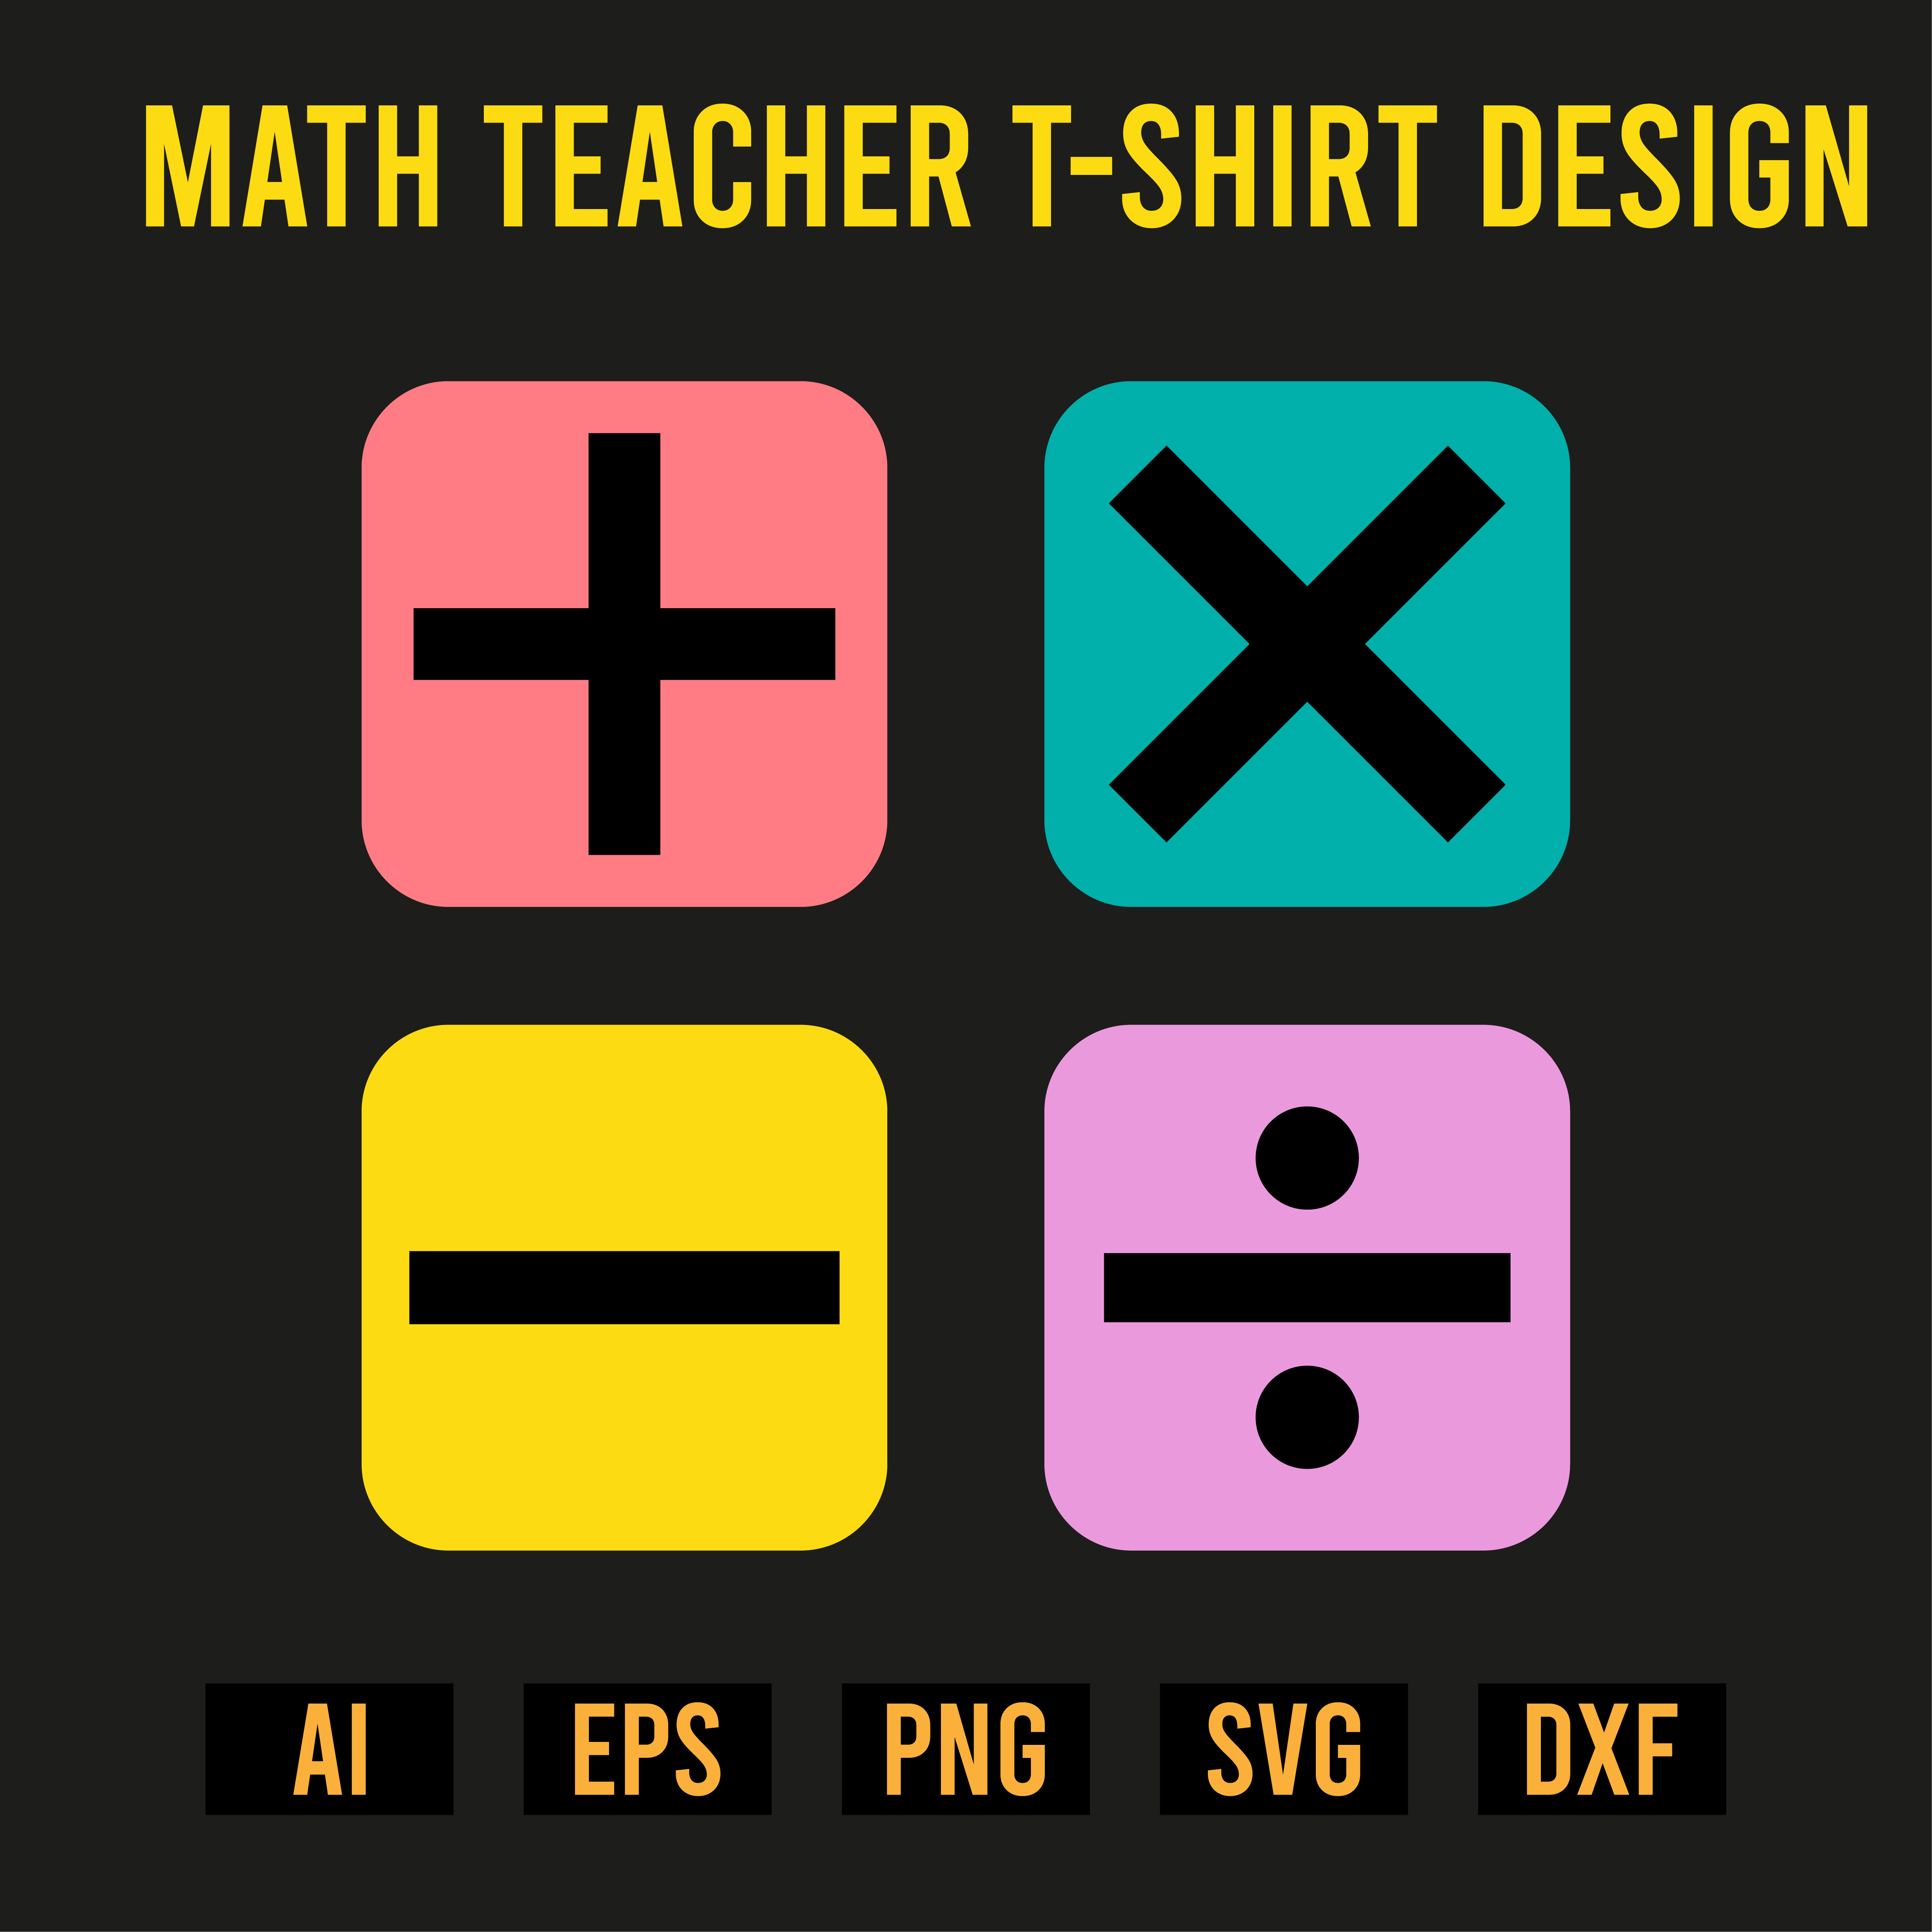 Math Teacher T-Shirt Design image preview.